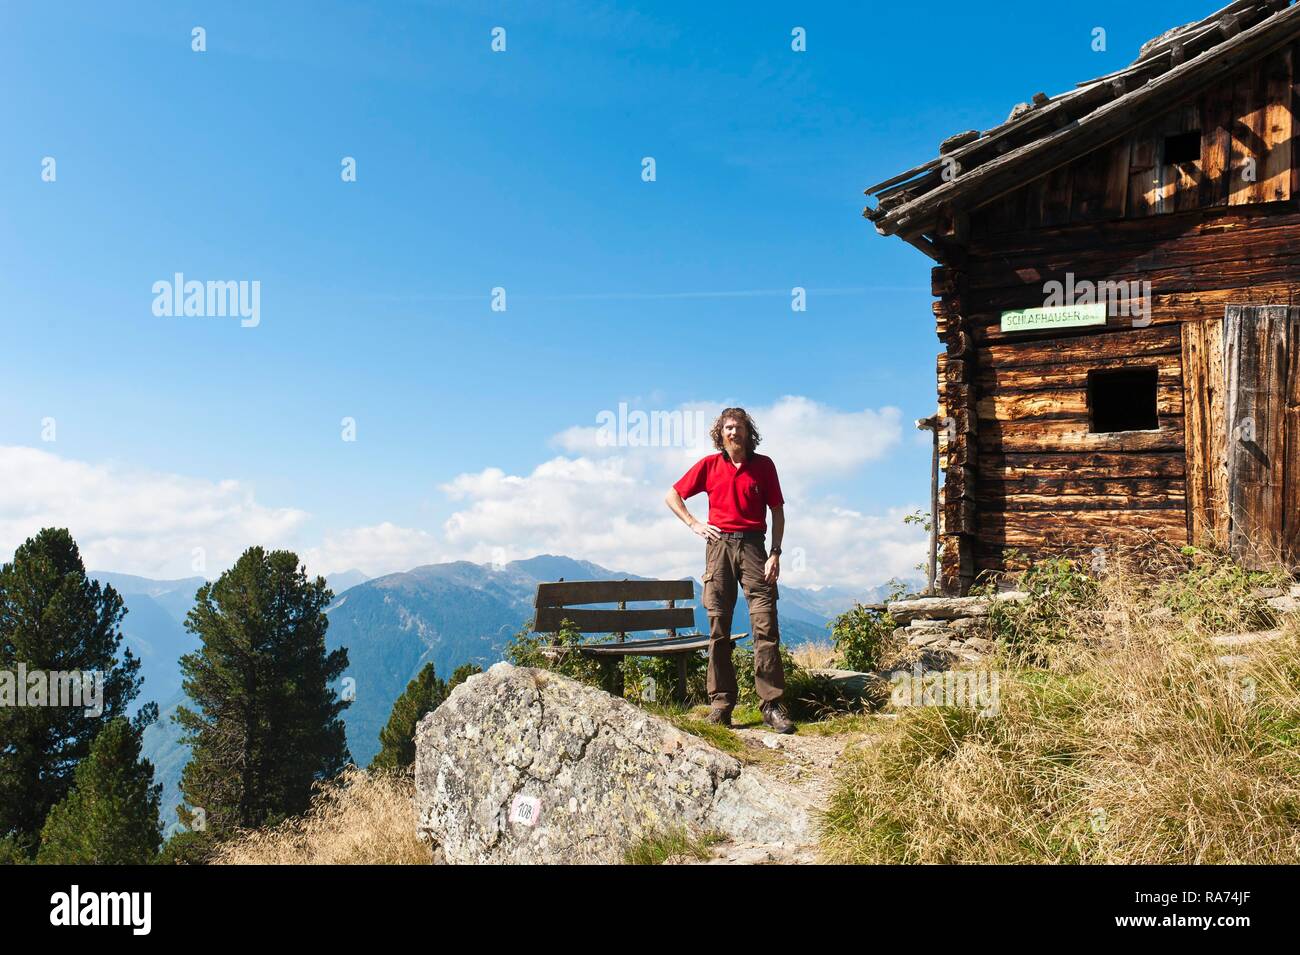 Los caminantes, excursionistas de montaña delante de chozas, dormitorios, cerca de la arena en Taufers, Campo Tures, Ahrntal, Valle Aurina, Tirol del Sur Foto de stock